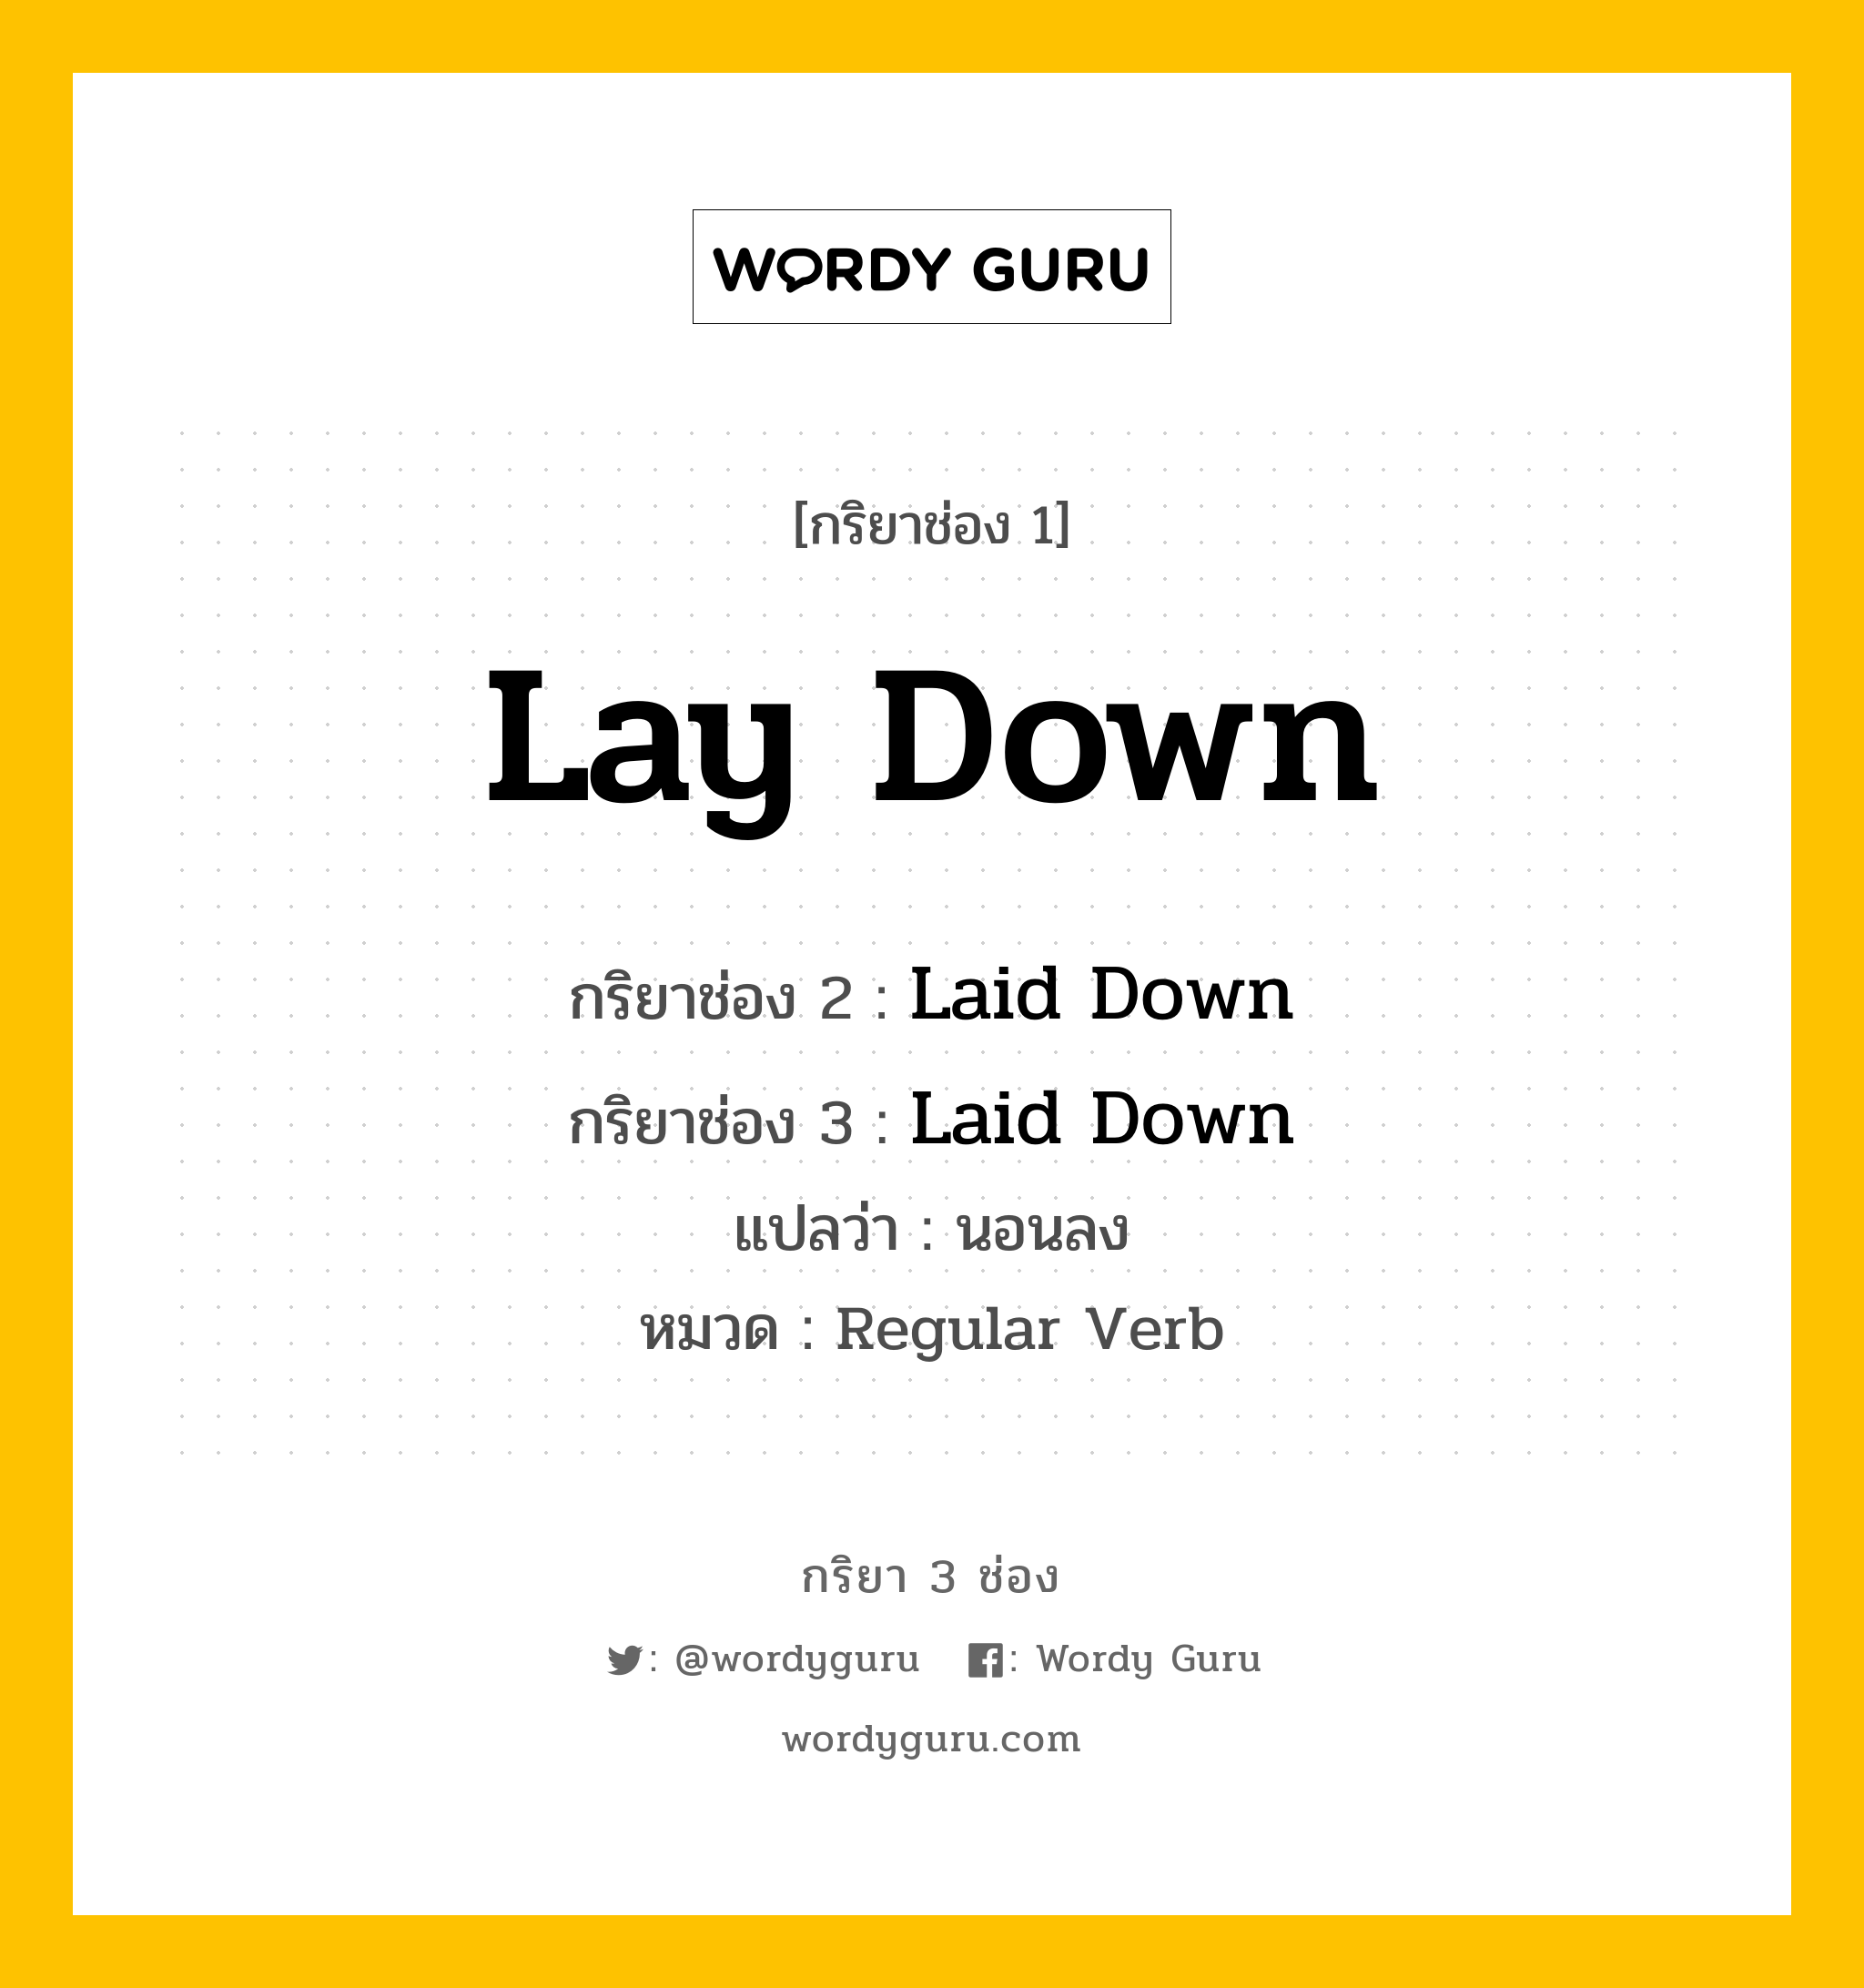 กริยา 3 ช่อง: Lay Down ช่อง 2 Lay Down ช่อง 3 คืออะไร, กริยาช่อง 1 Lay Down กริยาช่อง 2 Laid Down กริยาช่อง 3 Laid Down แปลว่า นอนลง หมวด Regular Verb หมวด Regular Verb